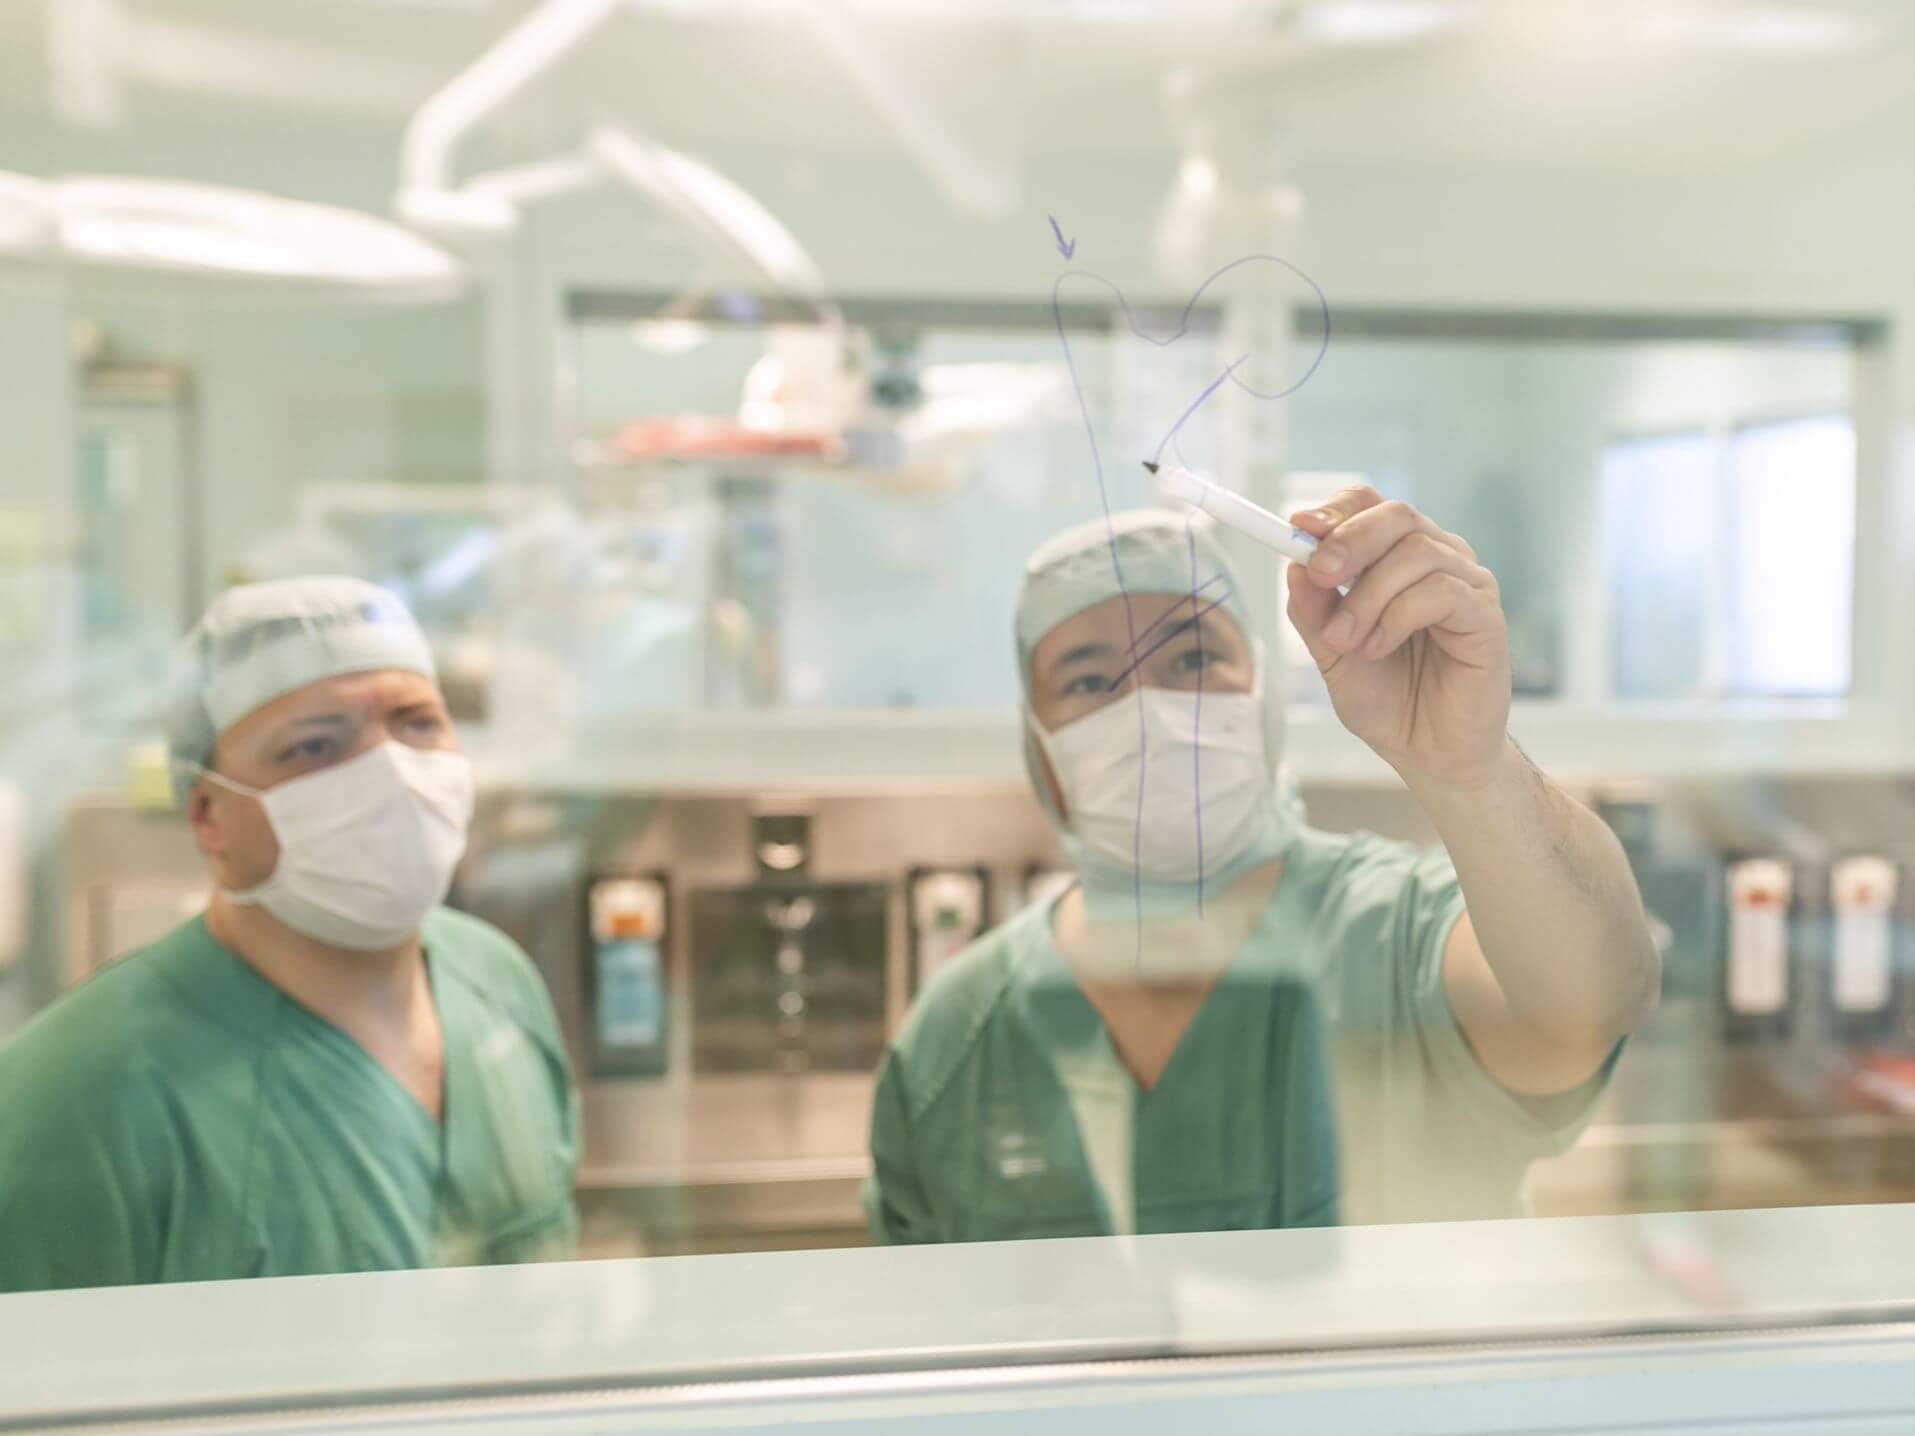 Chefarzt zeichnet einen Oberschenkelknochen auf die Glaswand im OP